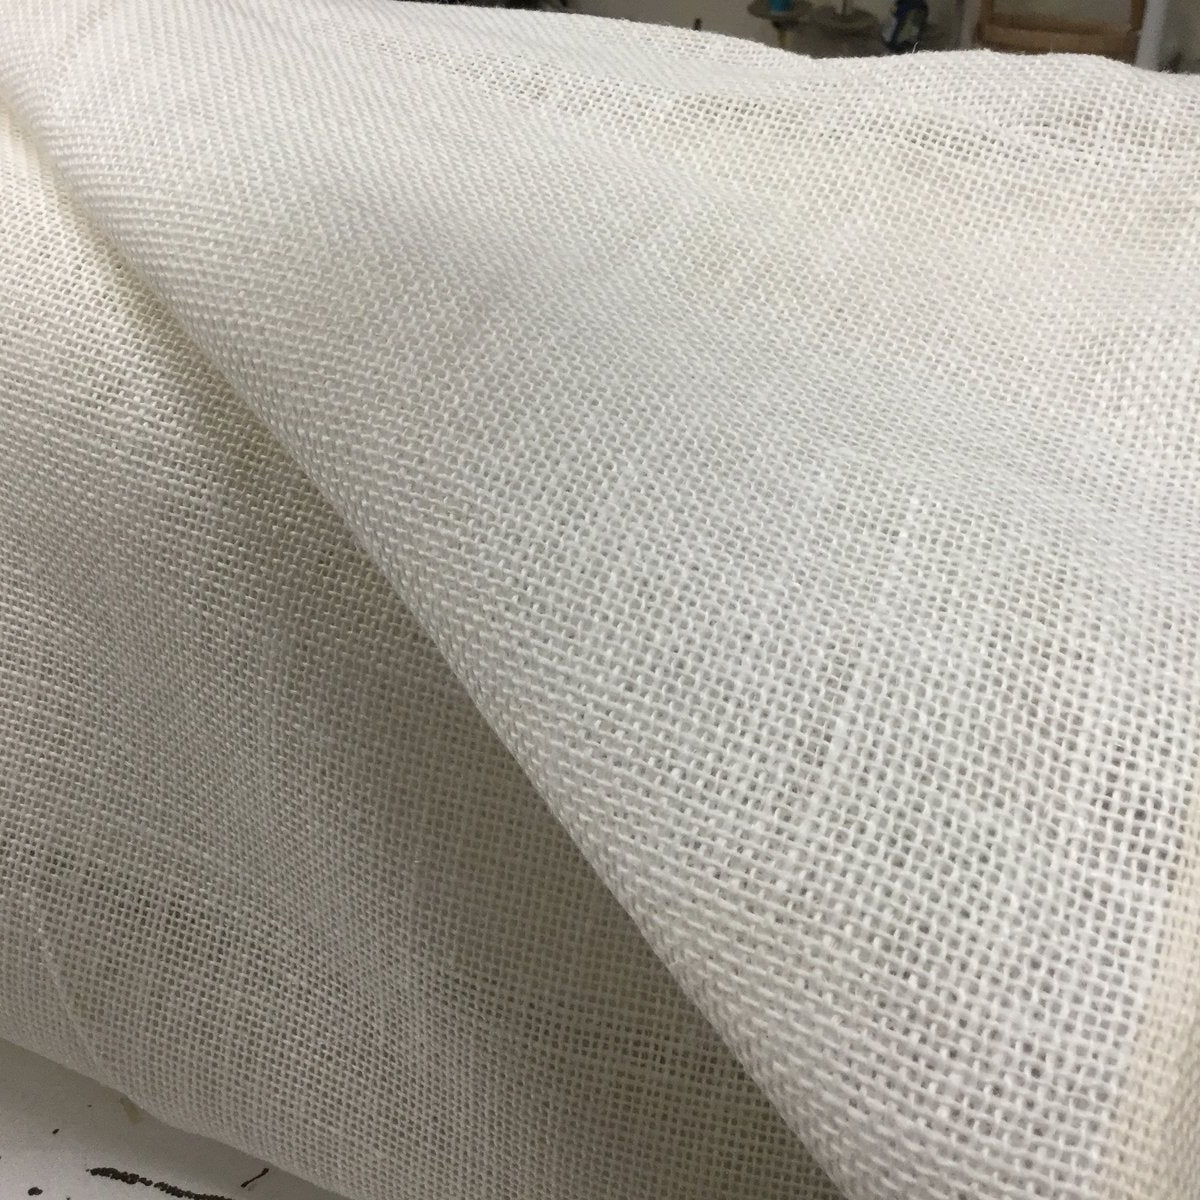 White linen